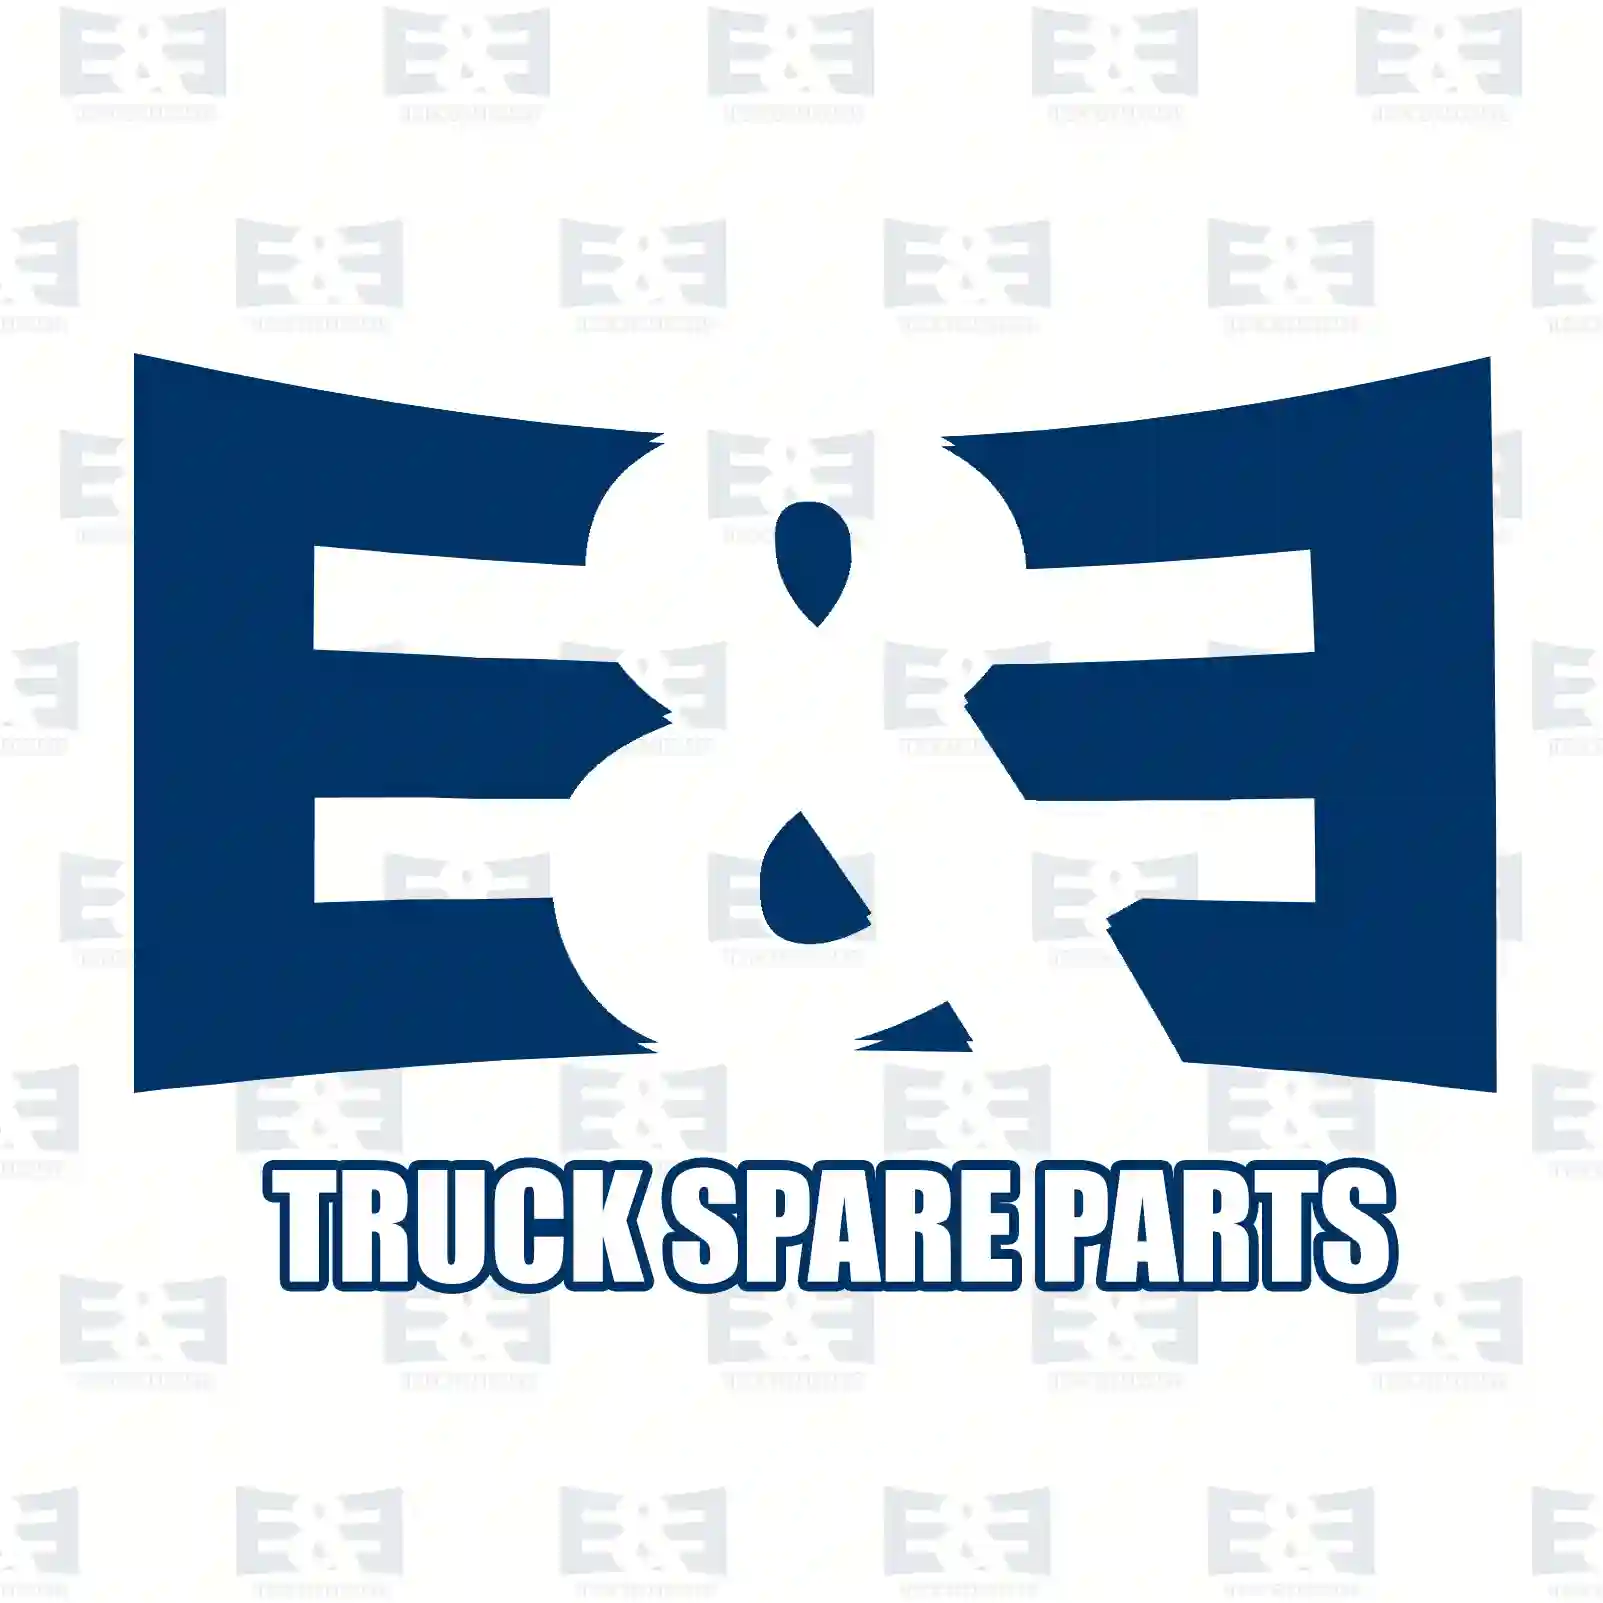 Screw, 2E2285973, 9101430000, 910143010000, ZG40283-0008, ||  2E2285973 E&E Truck Spare Parts | Truck Spare Parts, Auotomotive Spare Parts Screw, 2E2285973, 9101430000, 910143010000, ZG40283-0008, ||  2E2285973 E&E Truck Spare Parts | Truck Spare Parts, Auotomotive Spare Parts